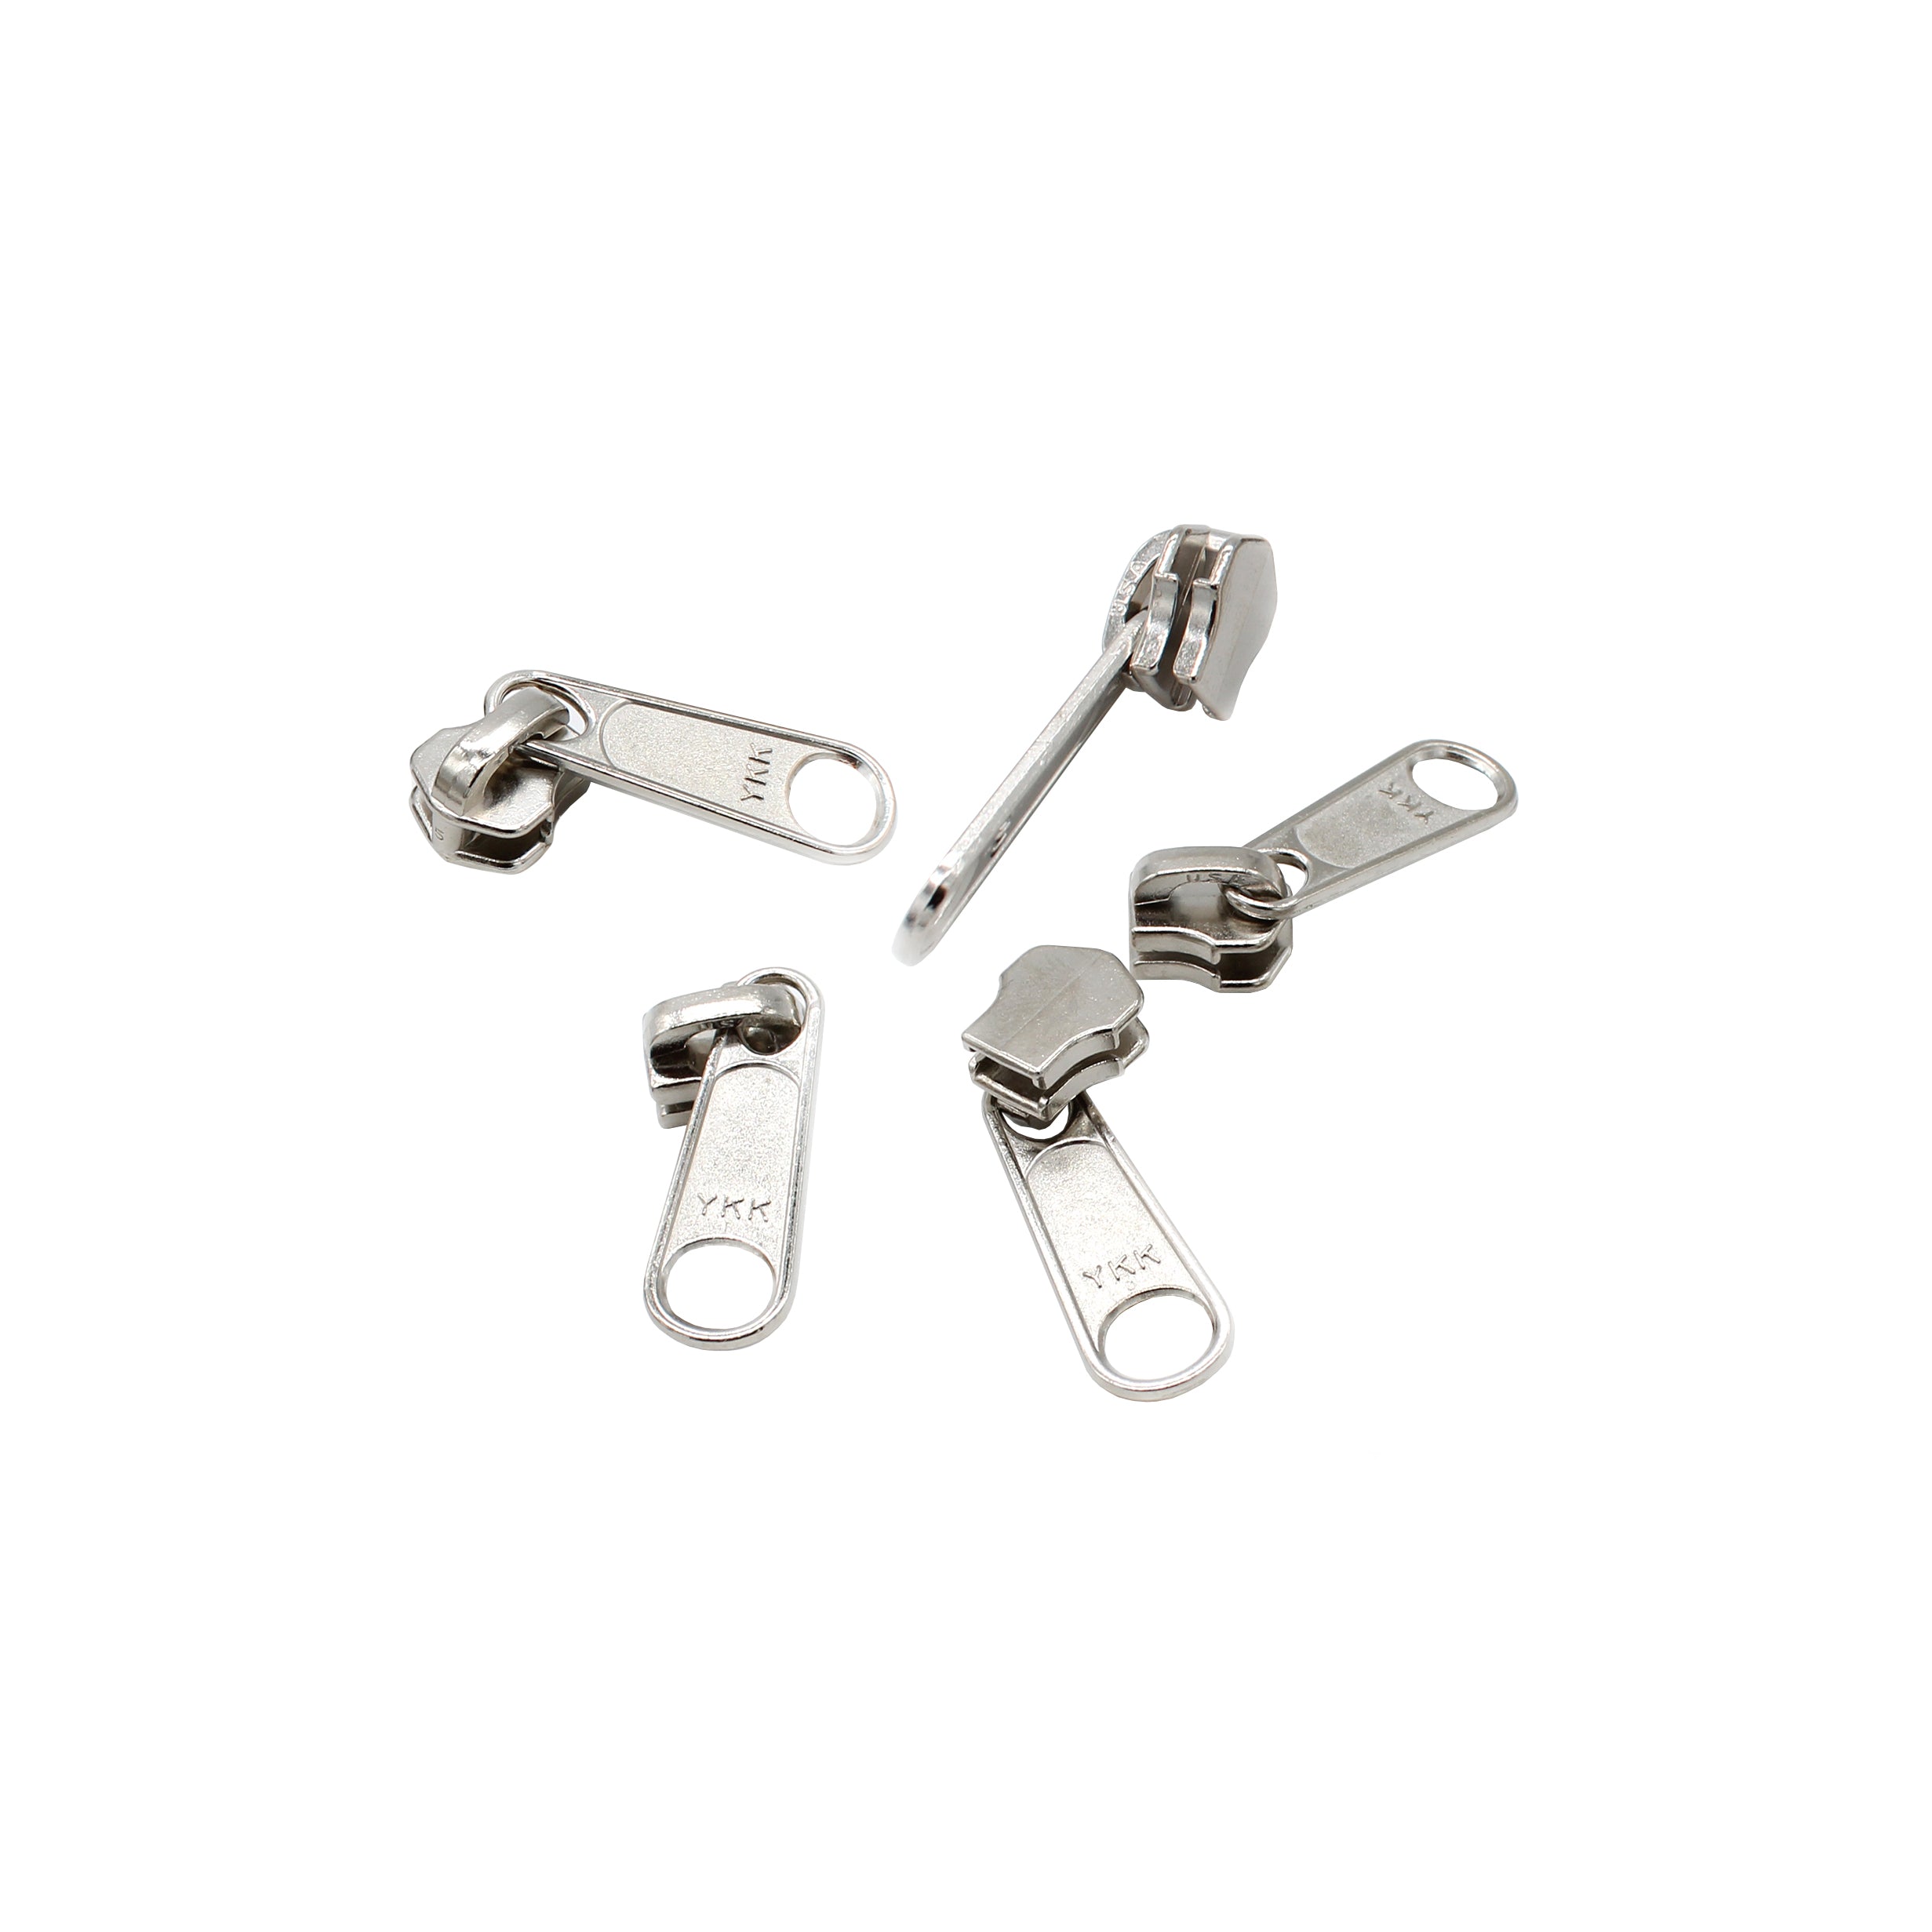 Trident Fix N Zip 3 Pack Zipper Repair Kit